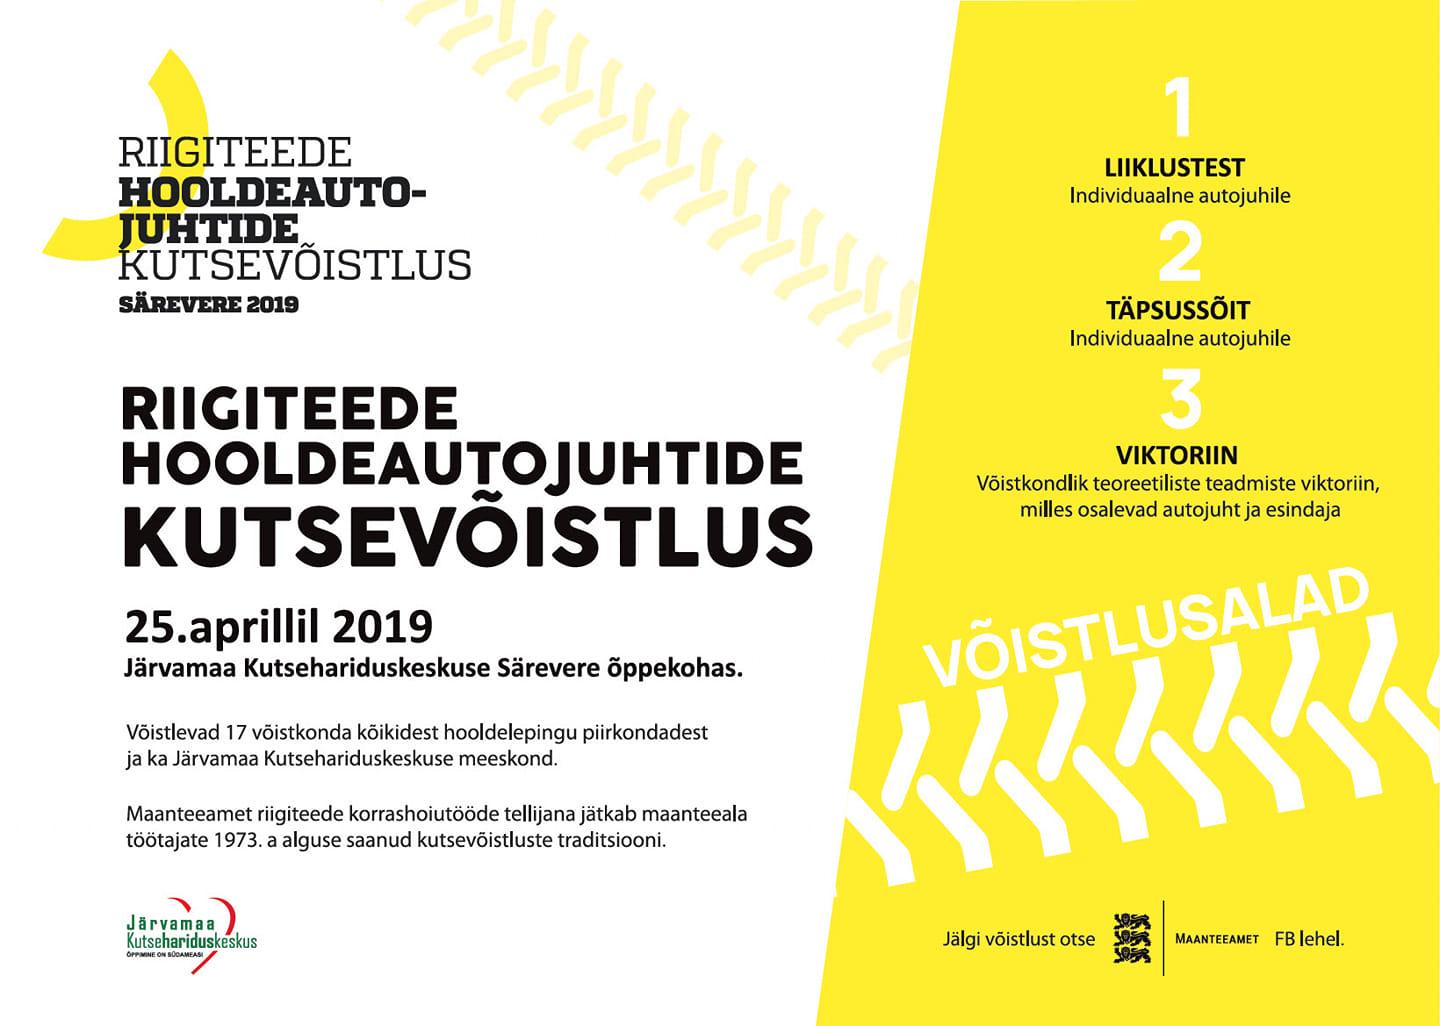 25.aprillil 2019 toimub Järvamaa Kutsehariduskeskuse Särevere õppekohas riigiteede hooldeautojuhtide kutsevõistlus.